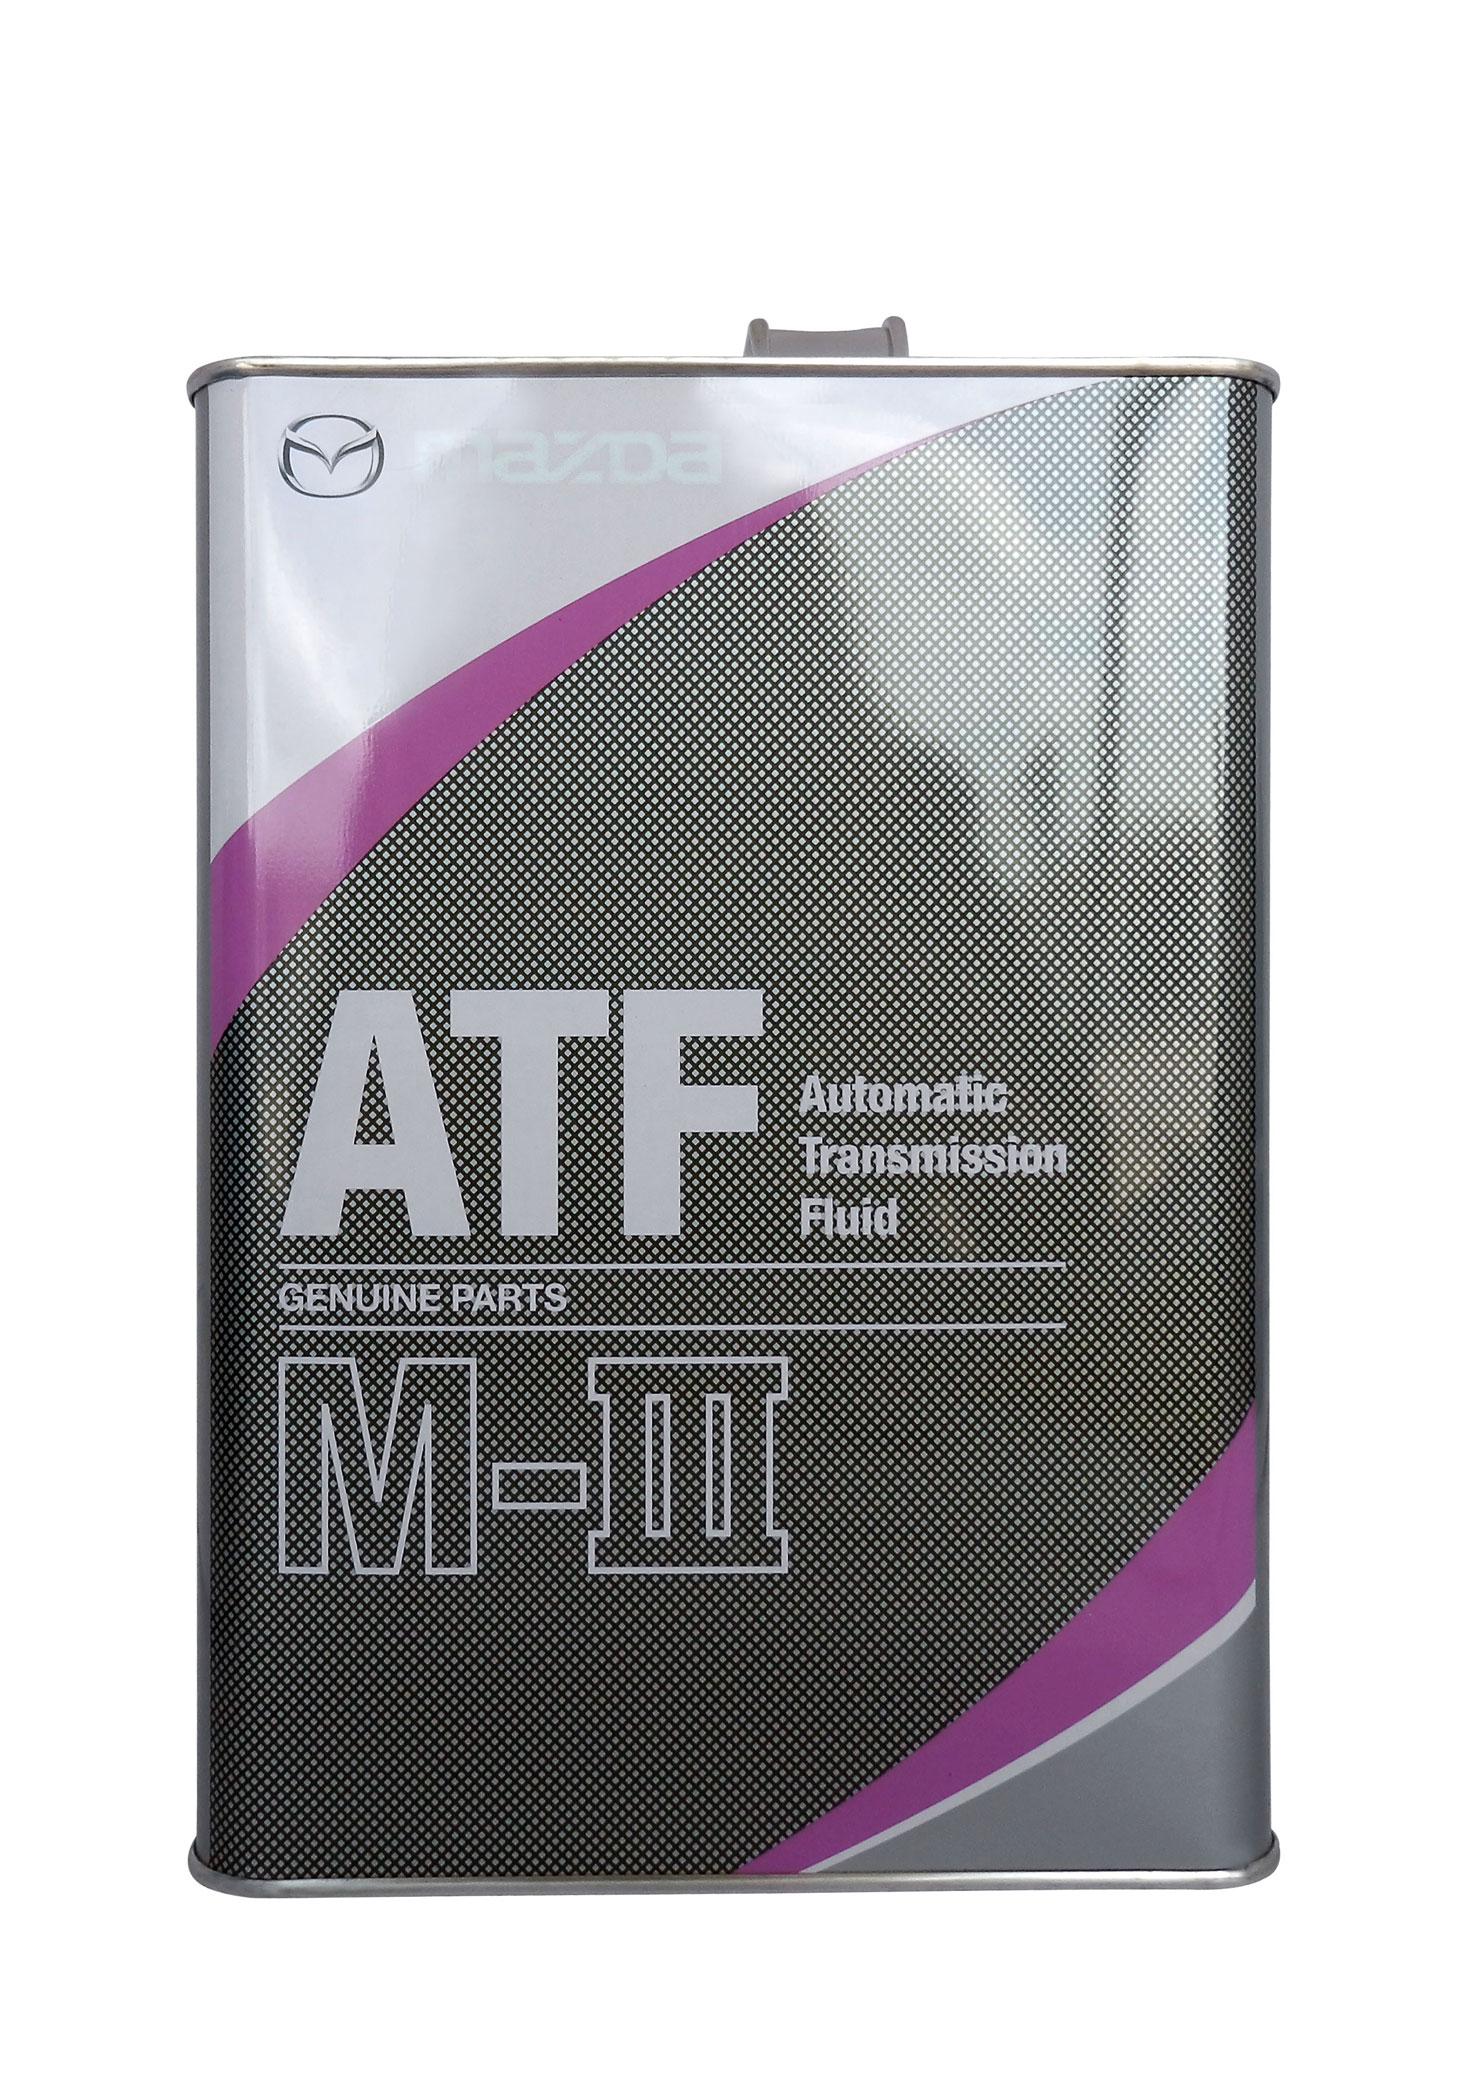 Mazda atf m. Mazda ATF m3. Mazda ATF M-3 4л. Трансмиссионное масло Mazda ATF M-III. Масло трансмиссионное Mazda ATF M-3, для АКПП, 4 Л.